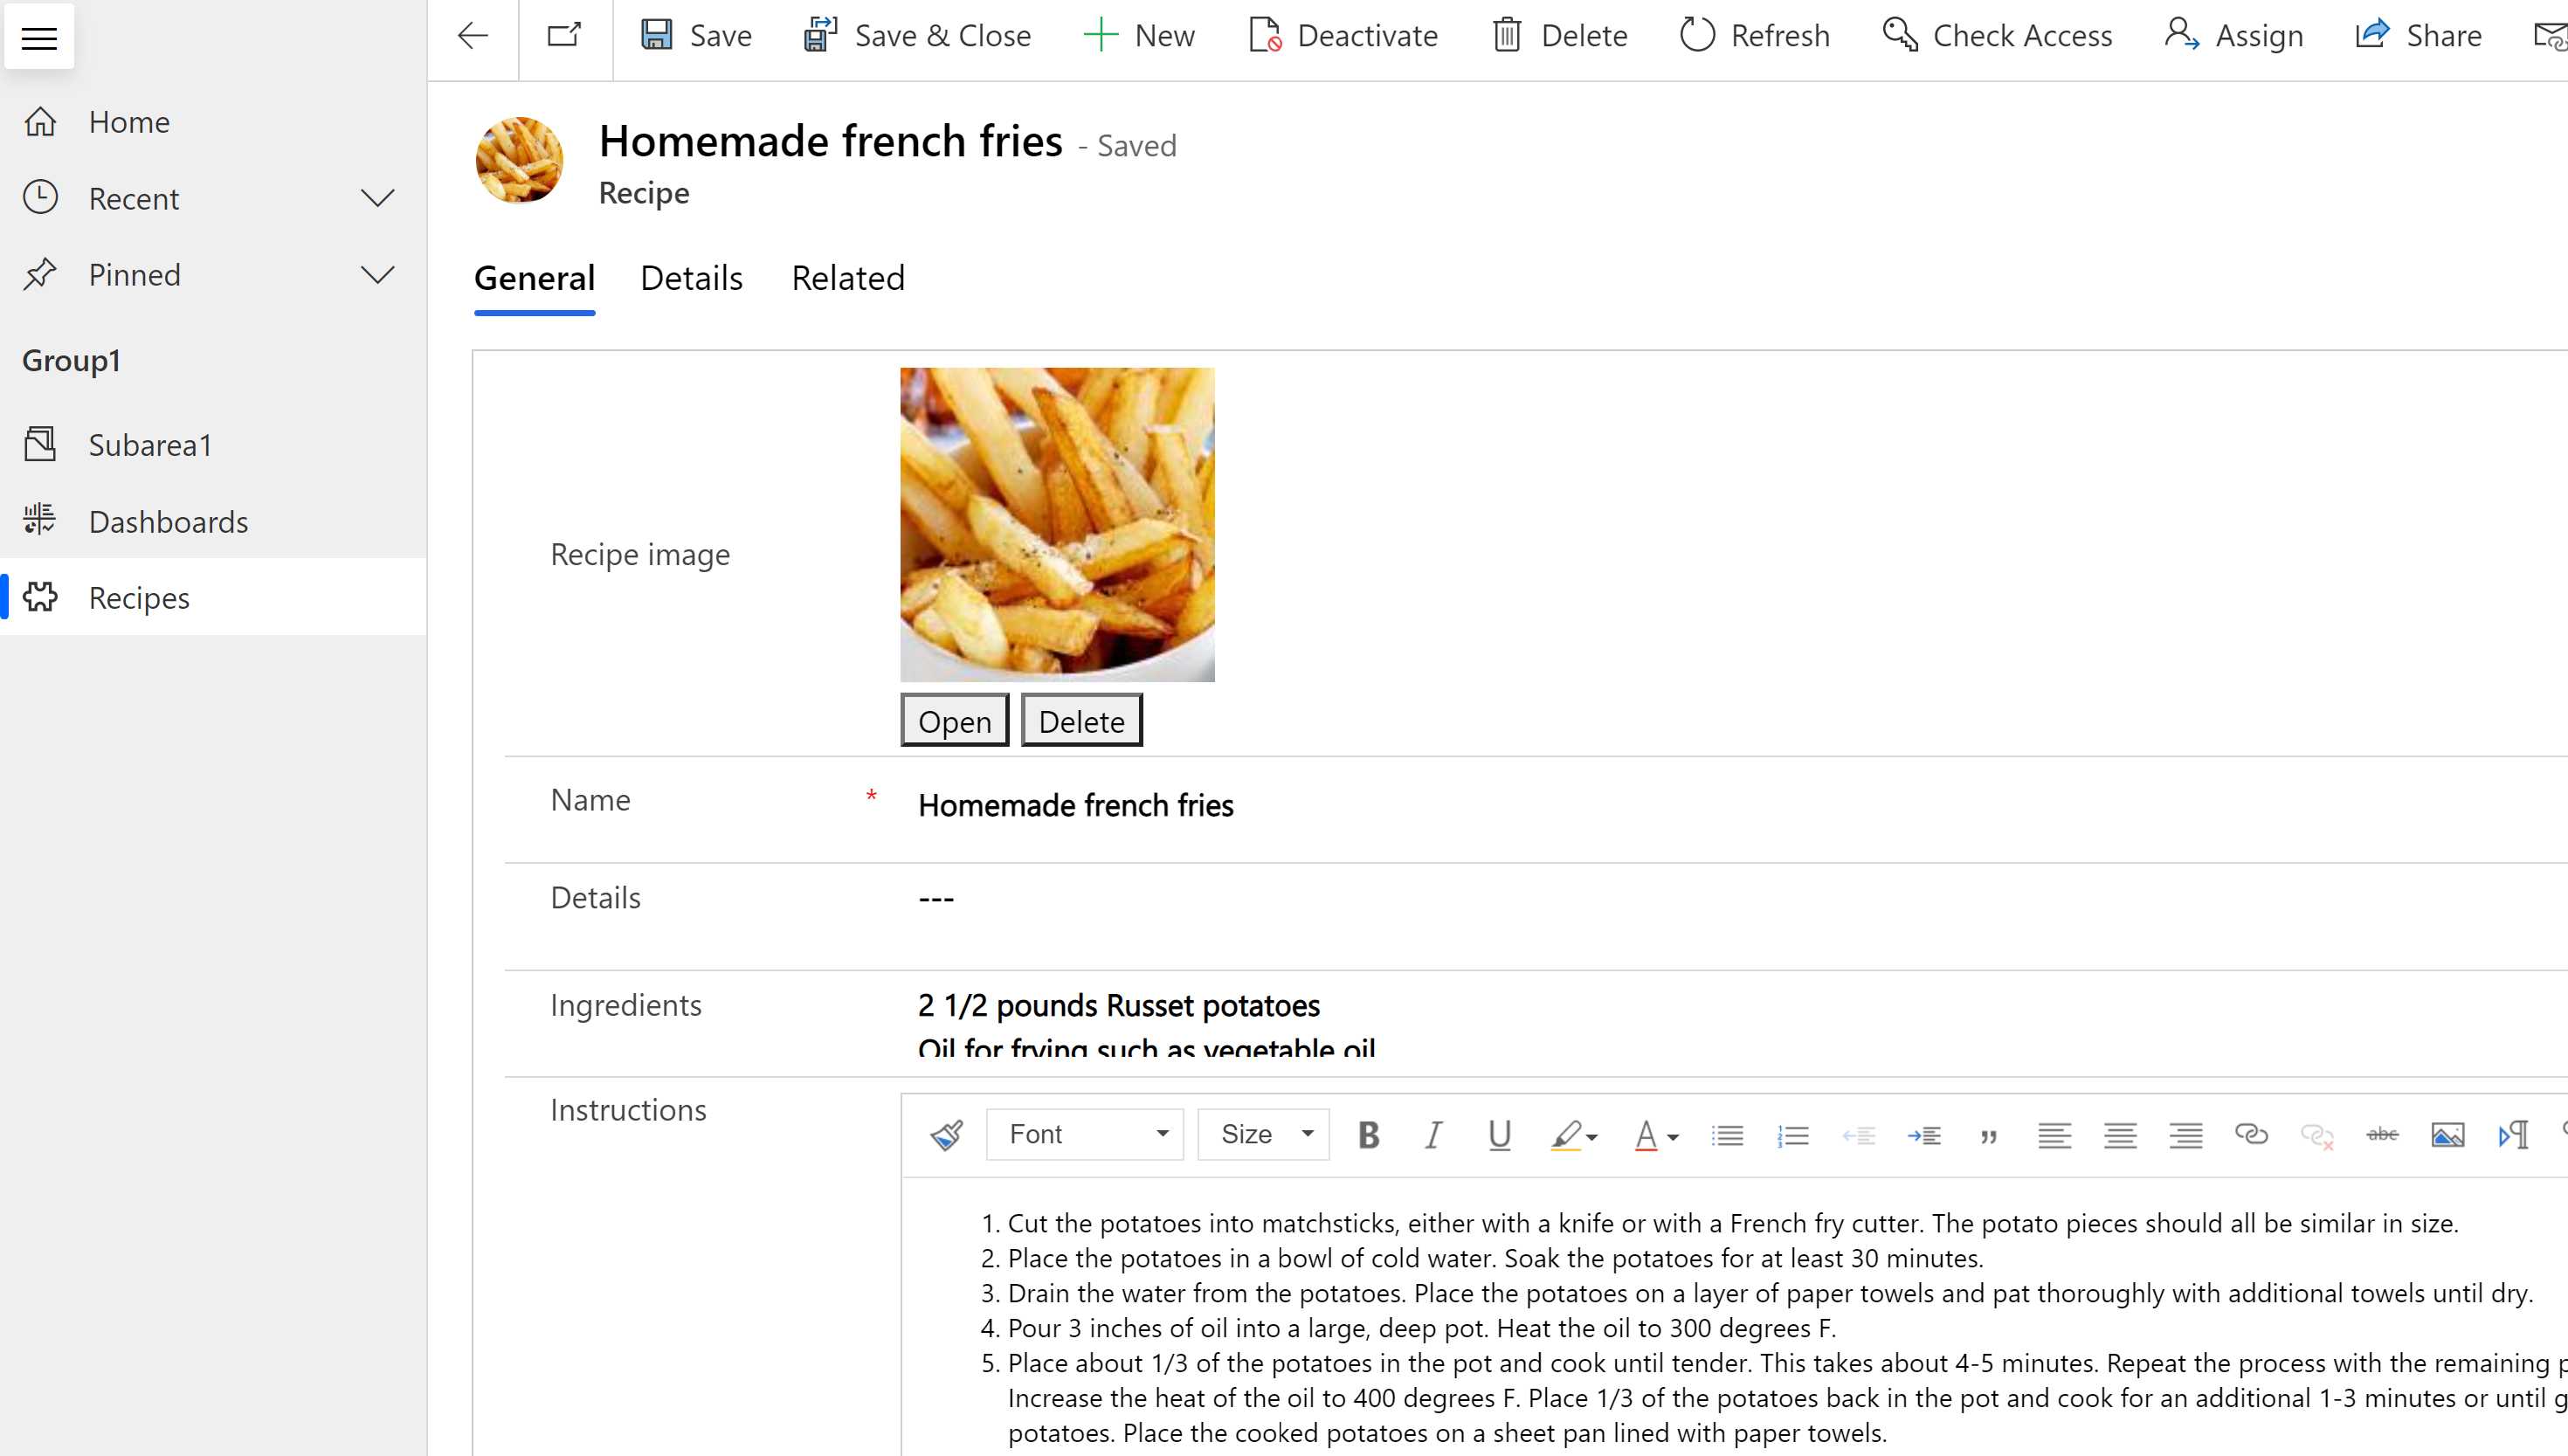 Форма во время выполнения с основным изображением картофеля фри, отображаемым в записи таблицы рецептов